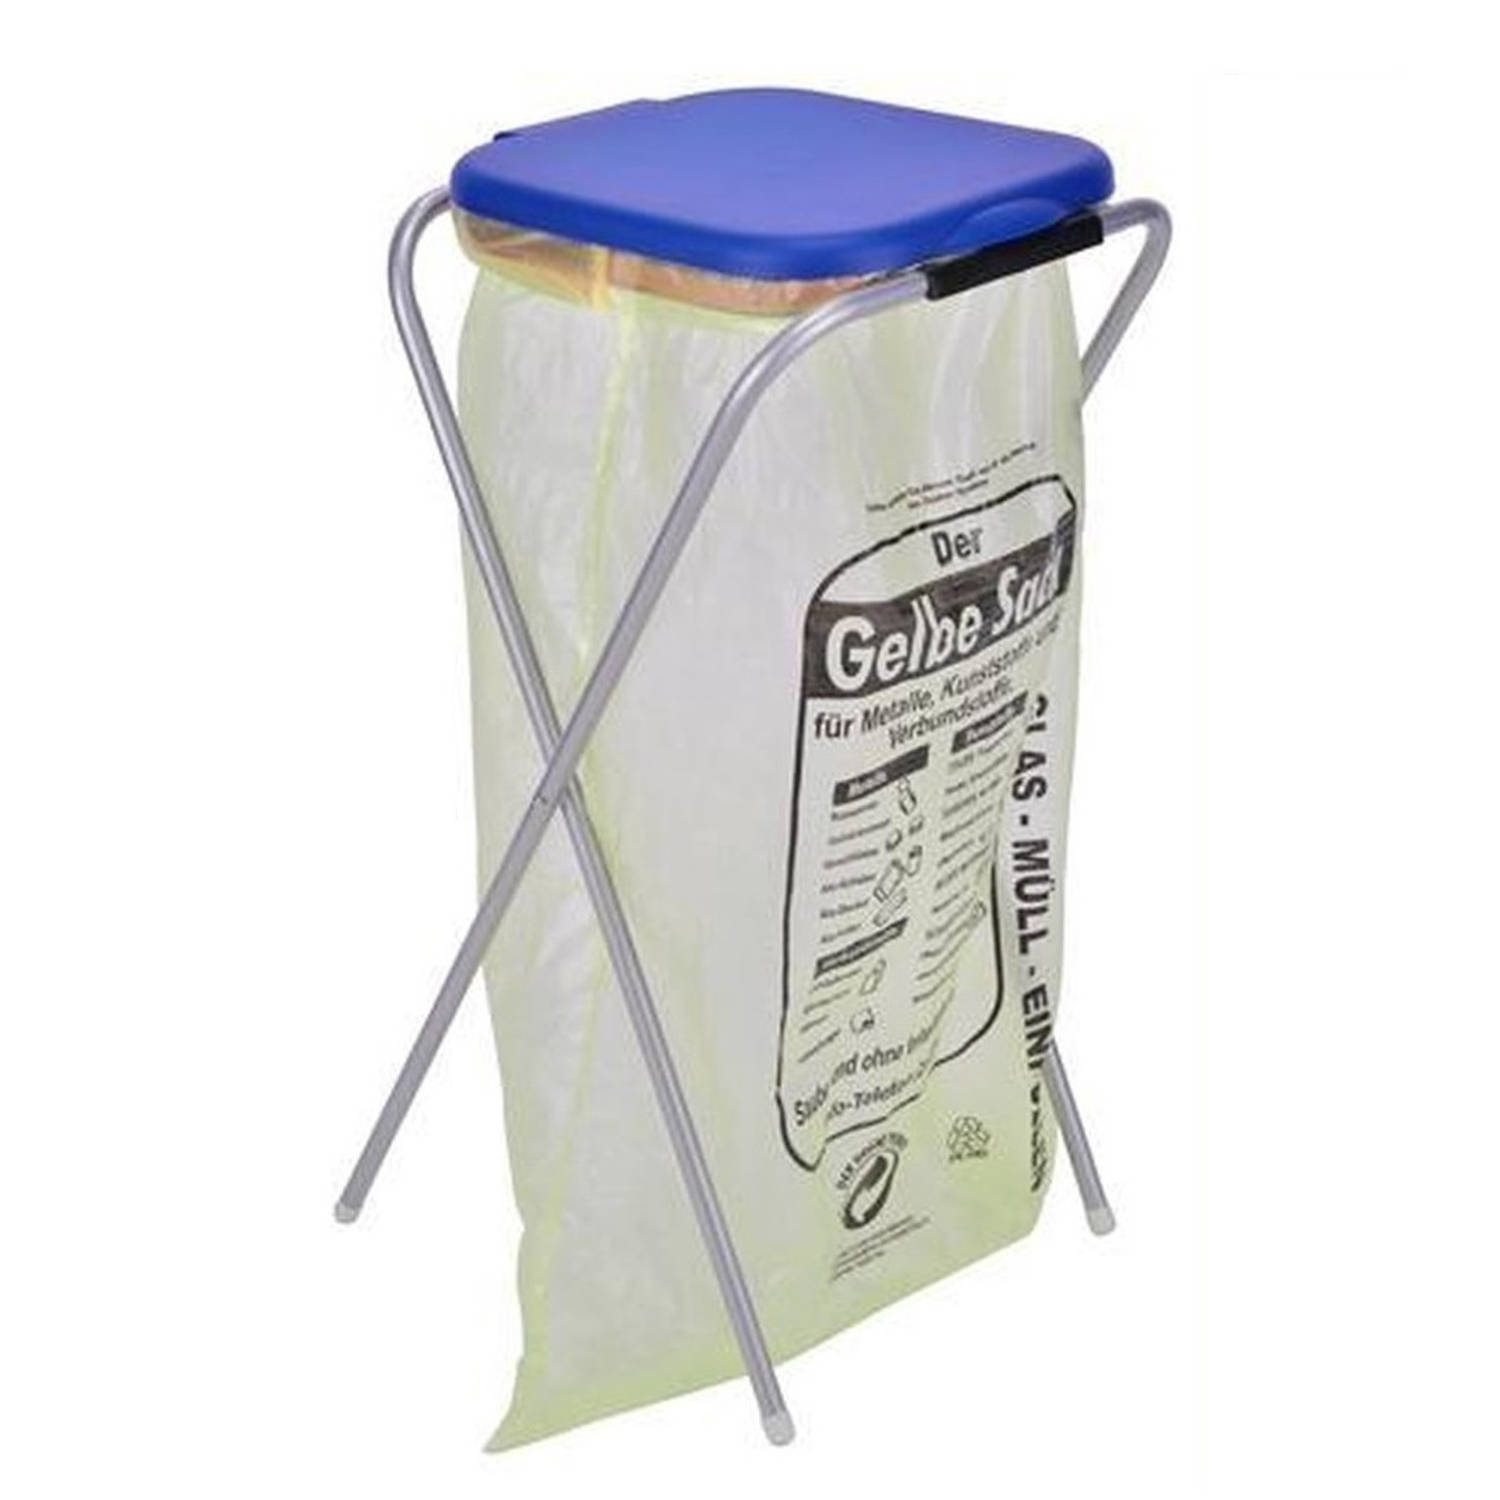 Terug kijken Hoe nevel Staande vuilniszakhouder prullenbak / vuilnisbak blauw 74,5 cm -  Prullenbakken | Blokker